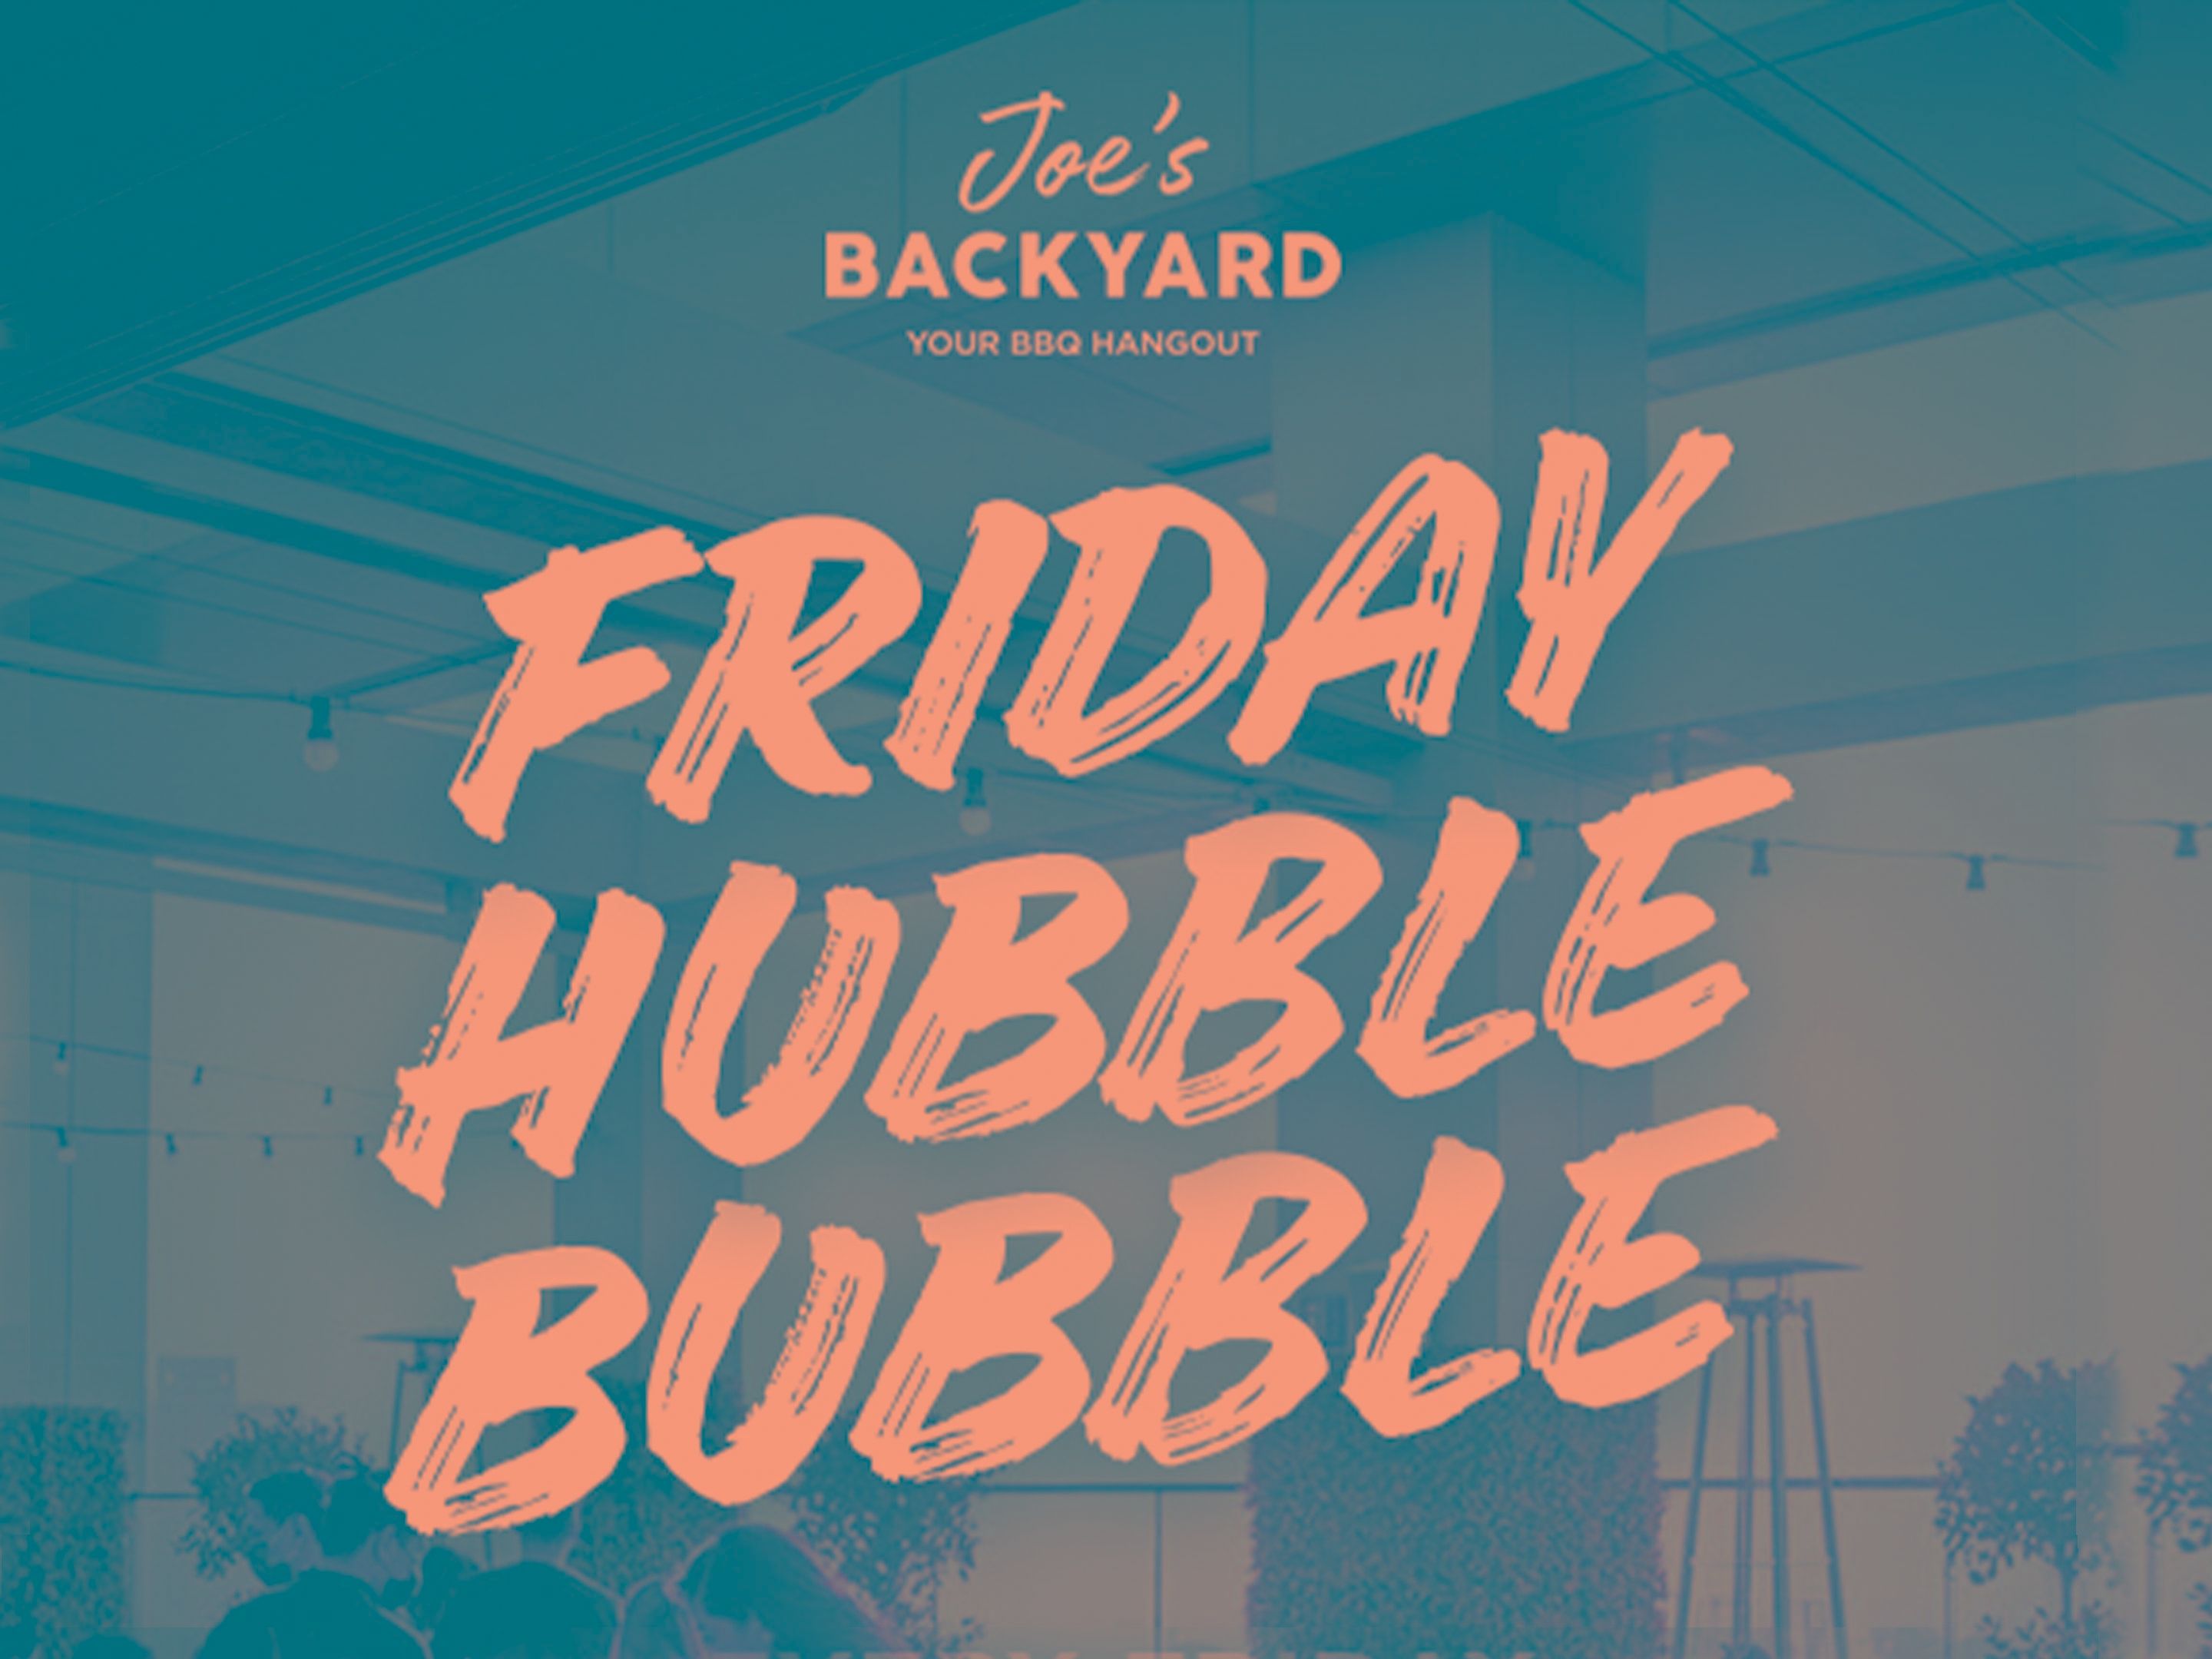 Joe's Friday Hubble Bubble